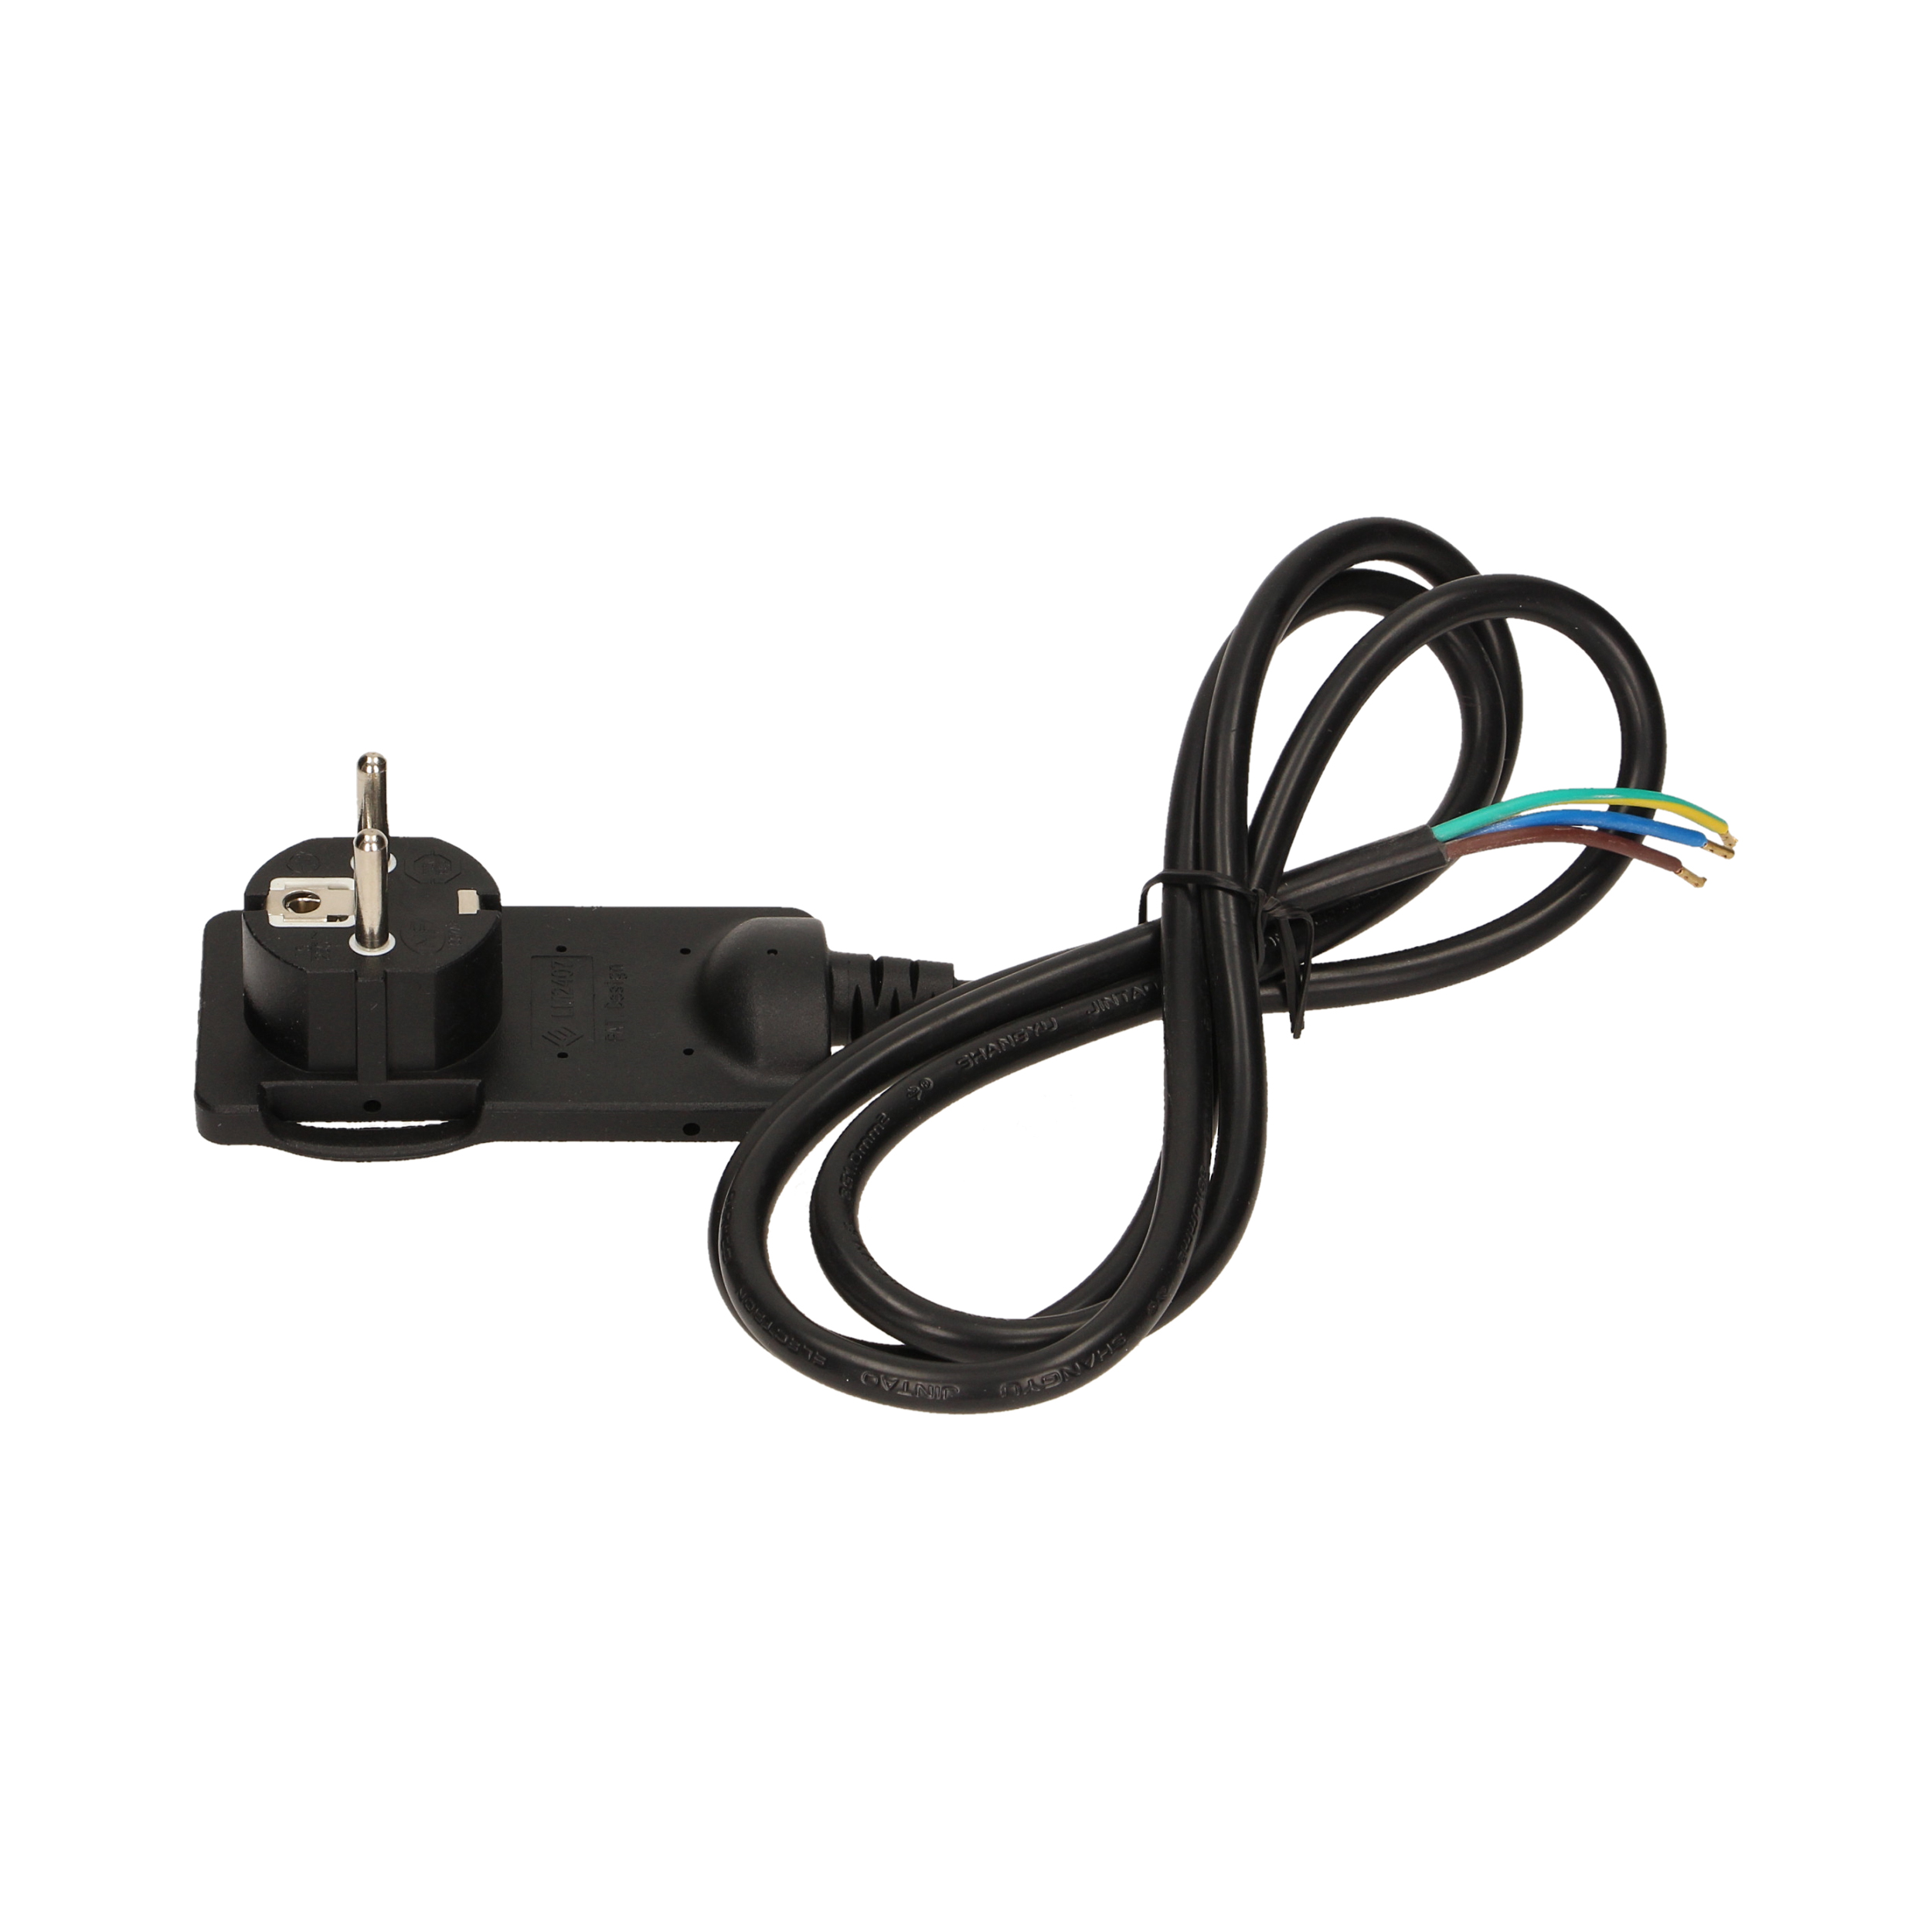 Stecher extra slim cu maner ORNO OR-AE-1312/B, 250V, cablu 1.5m, negru